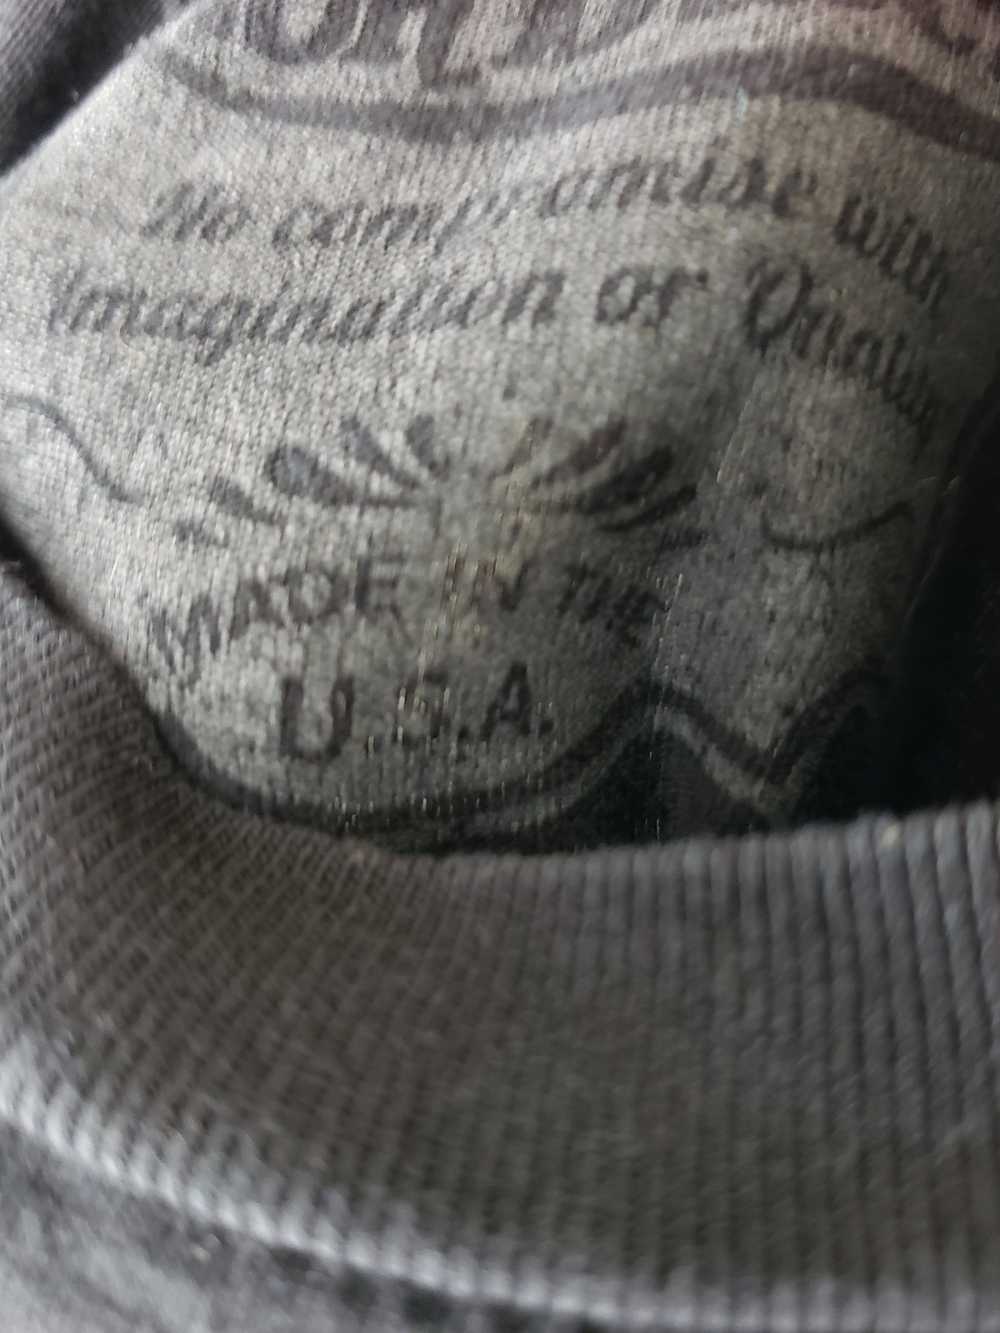 Von Dutch Von Dutch T-shirt, made in USA - image 2